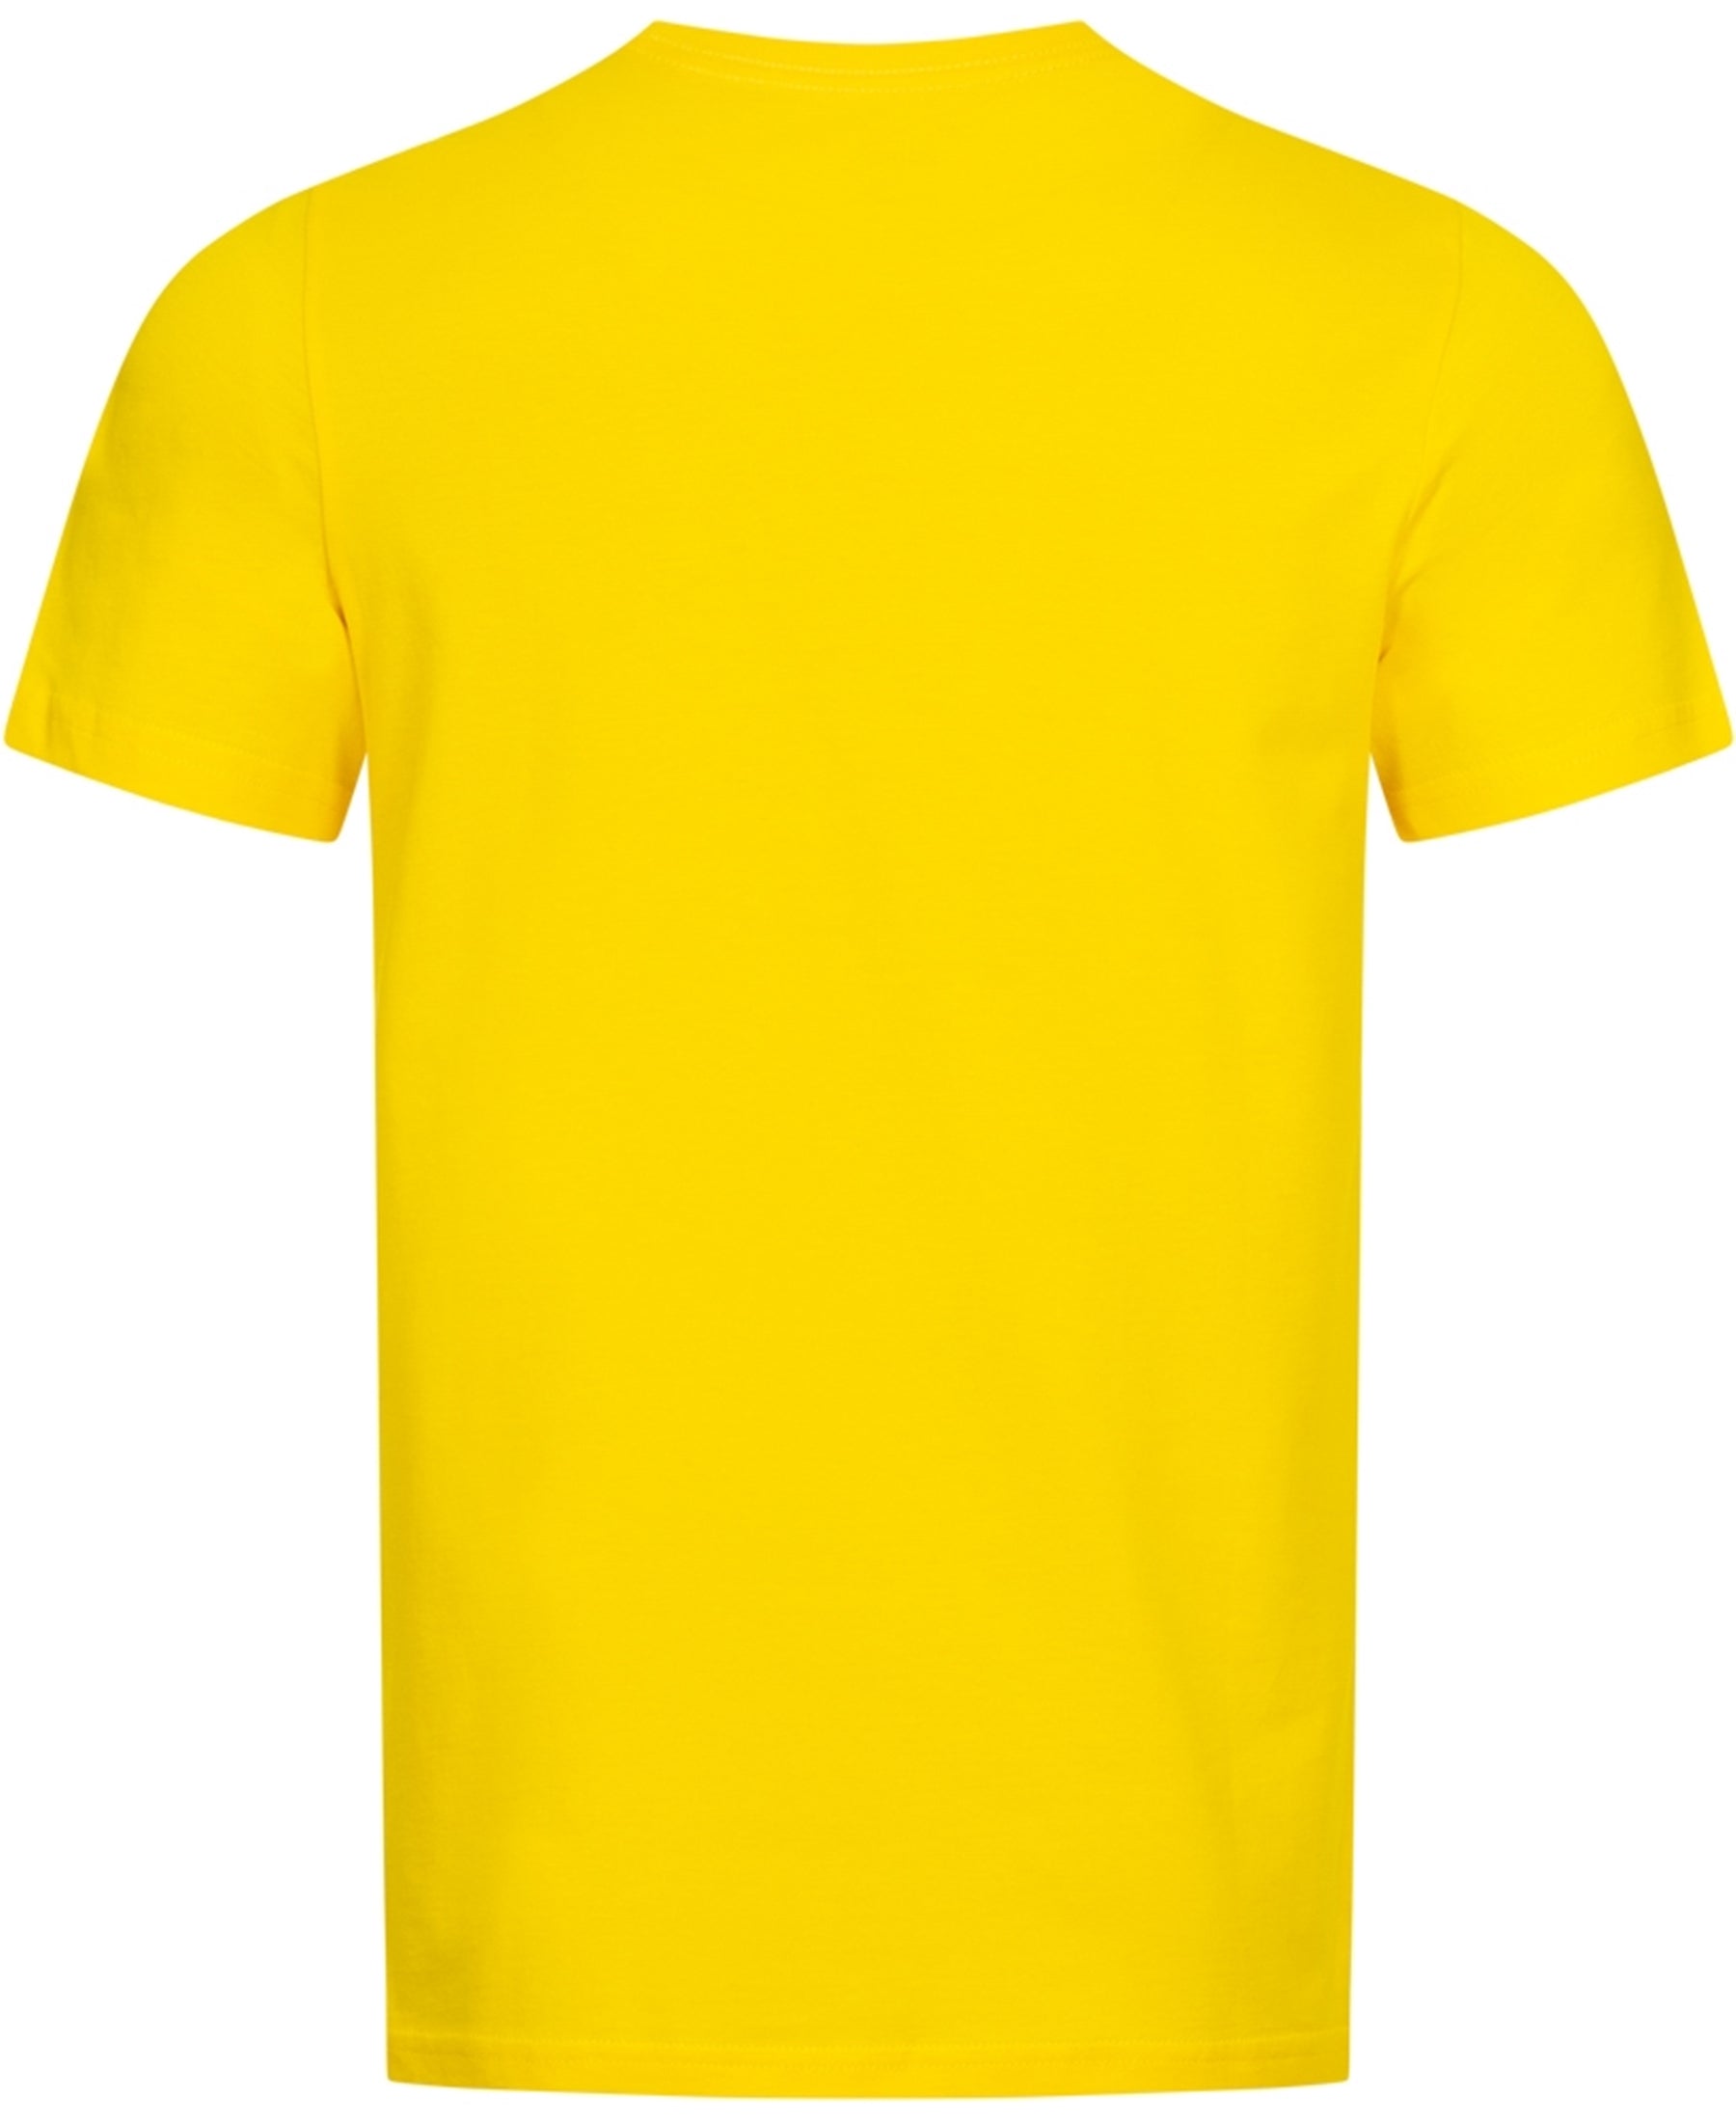 Mit dem Puma Borussia Dortmund BVB FTBLCORE T-Shirt (Artikelnummer 759992-01) bringst du deine Begeisterung für den Verein zum Ausdruck. Dieses hochwertige Shirt ist ein Must-Have für jeden BVB-Fan. Zeige deine Treue und Stolz in den Vereinsfarben. Bequem, langlebig und stylisch – das perfekte Kleidungsstück, um deine Unterstützung zu zeigen. Bestelle noch heute bei SHOP4TEAMSPORT und sei bereit für die nächste Saison!